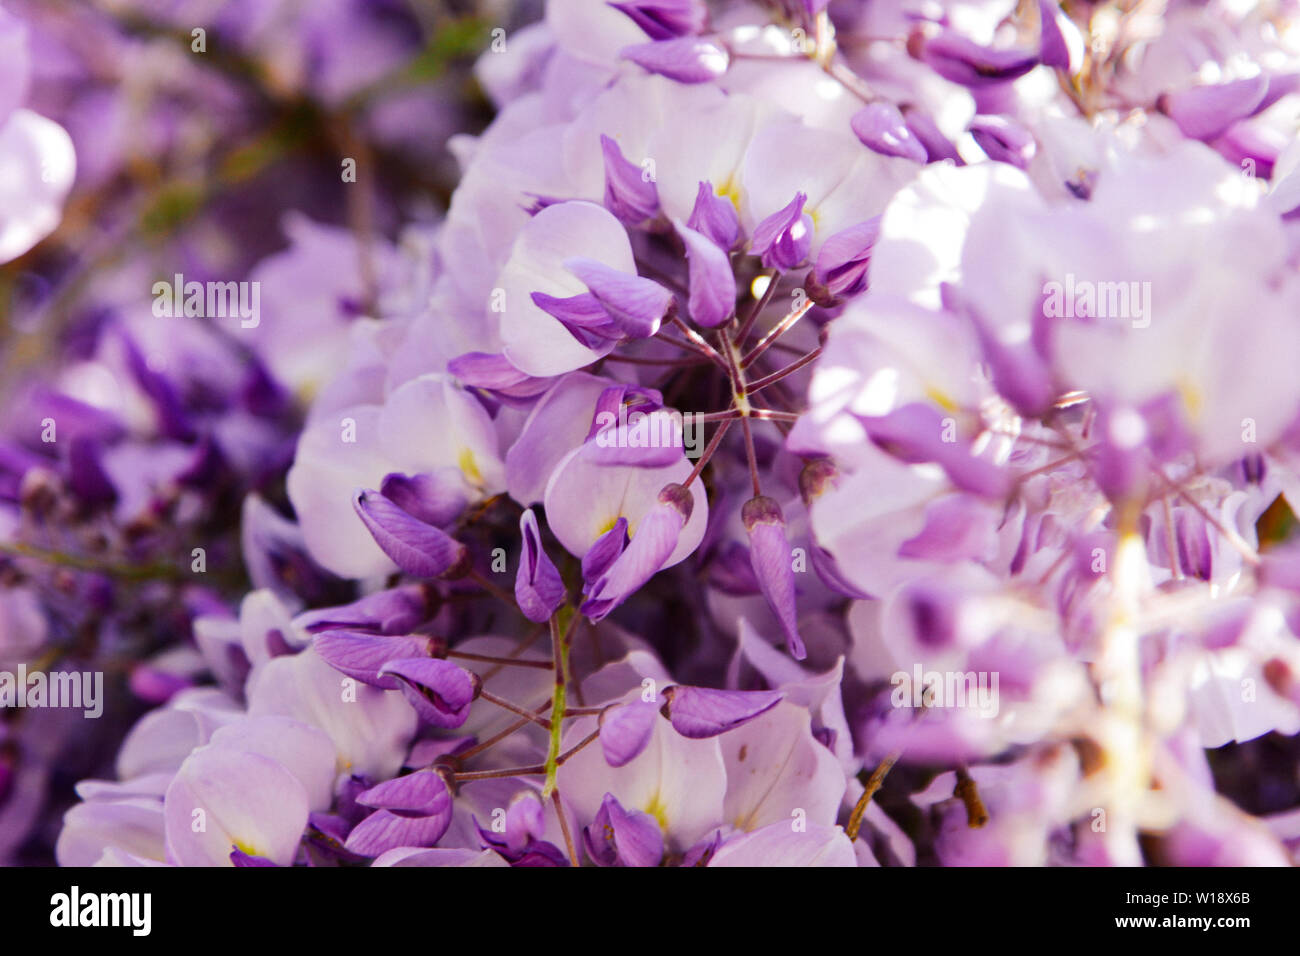 Blühenden glyzinien Niederlassung in einem Obstgarten. Künstlerische Natur wallpaper verschwommenen Hintergrund mit lila Blüten Wisteria oder Glycin im Frühling. Stockfoto